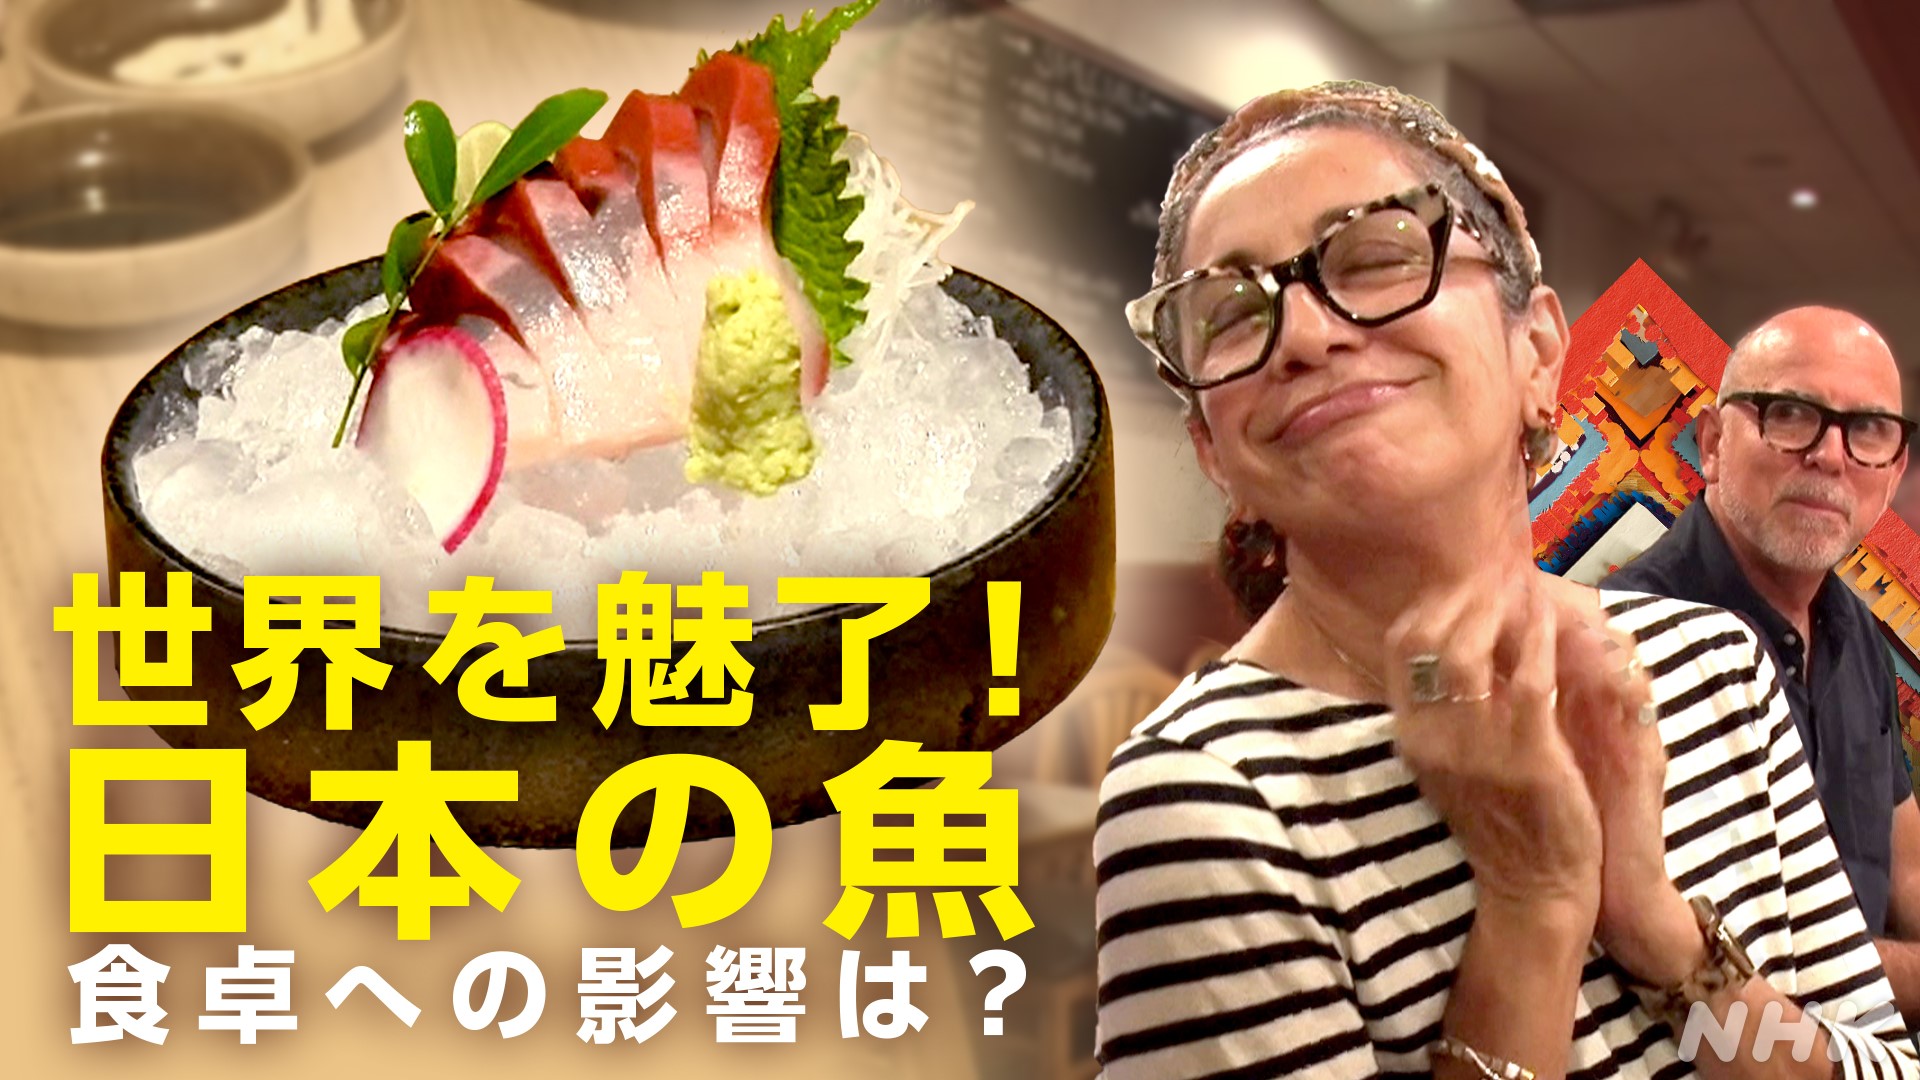 世界を魅了!日本の魚 市場の急拡大と変わる食卓